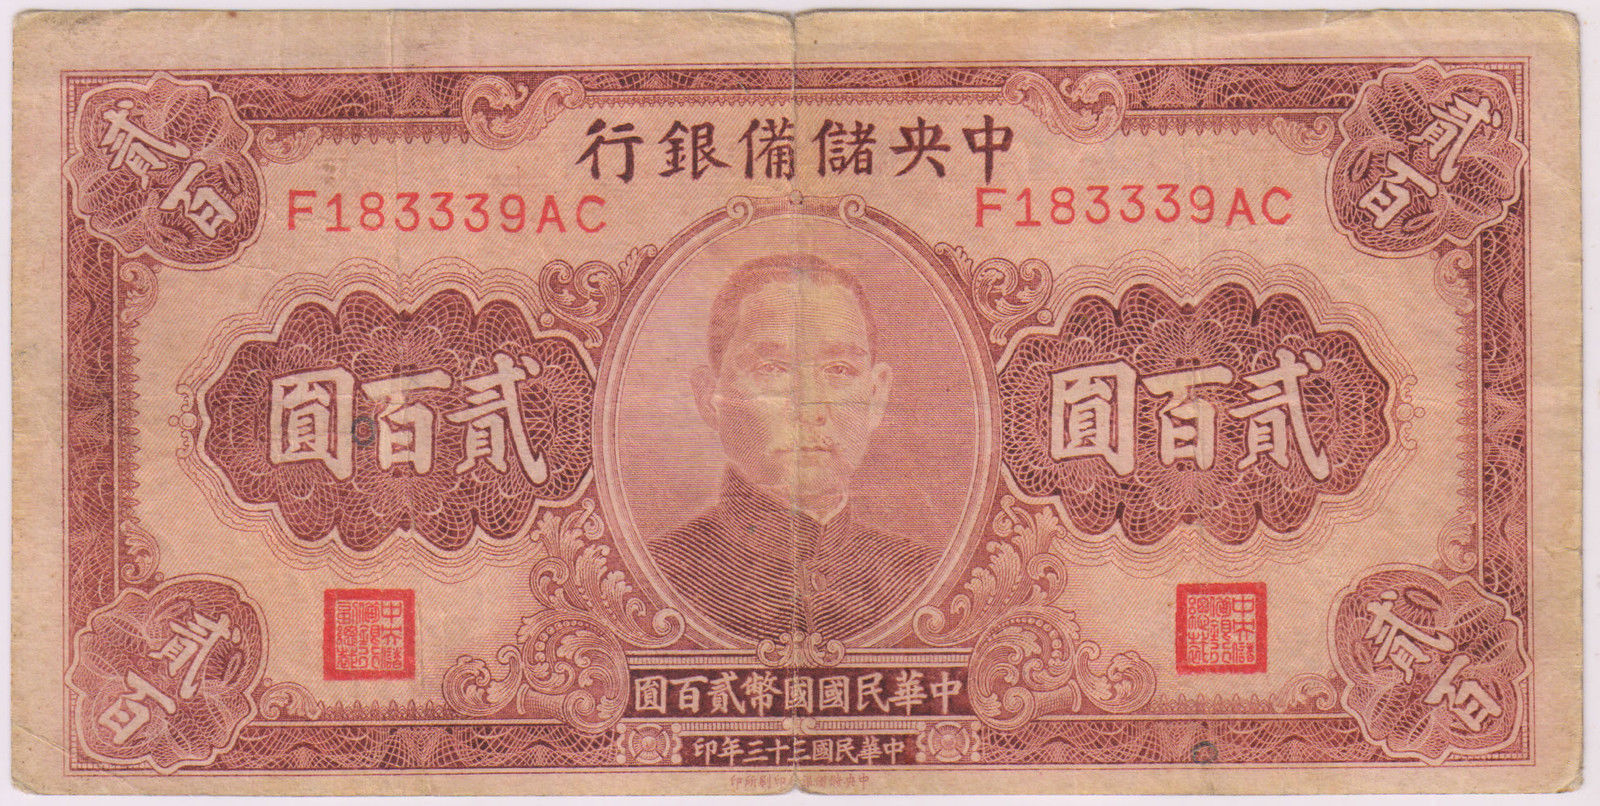 200 000 юаней. Бумажные деньги Китая. Старые китайские купюры. Древние китайские бумажные деньги. 200 Банкнота Китай.